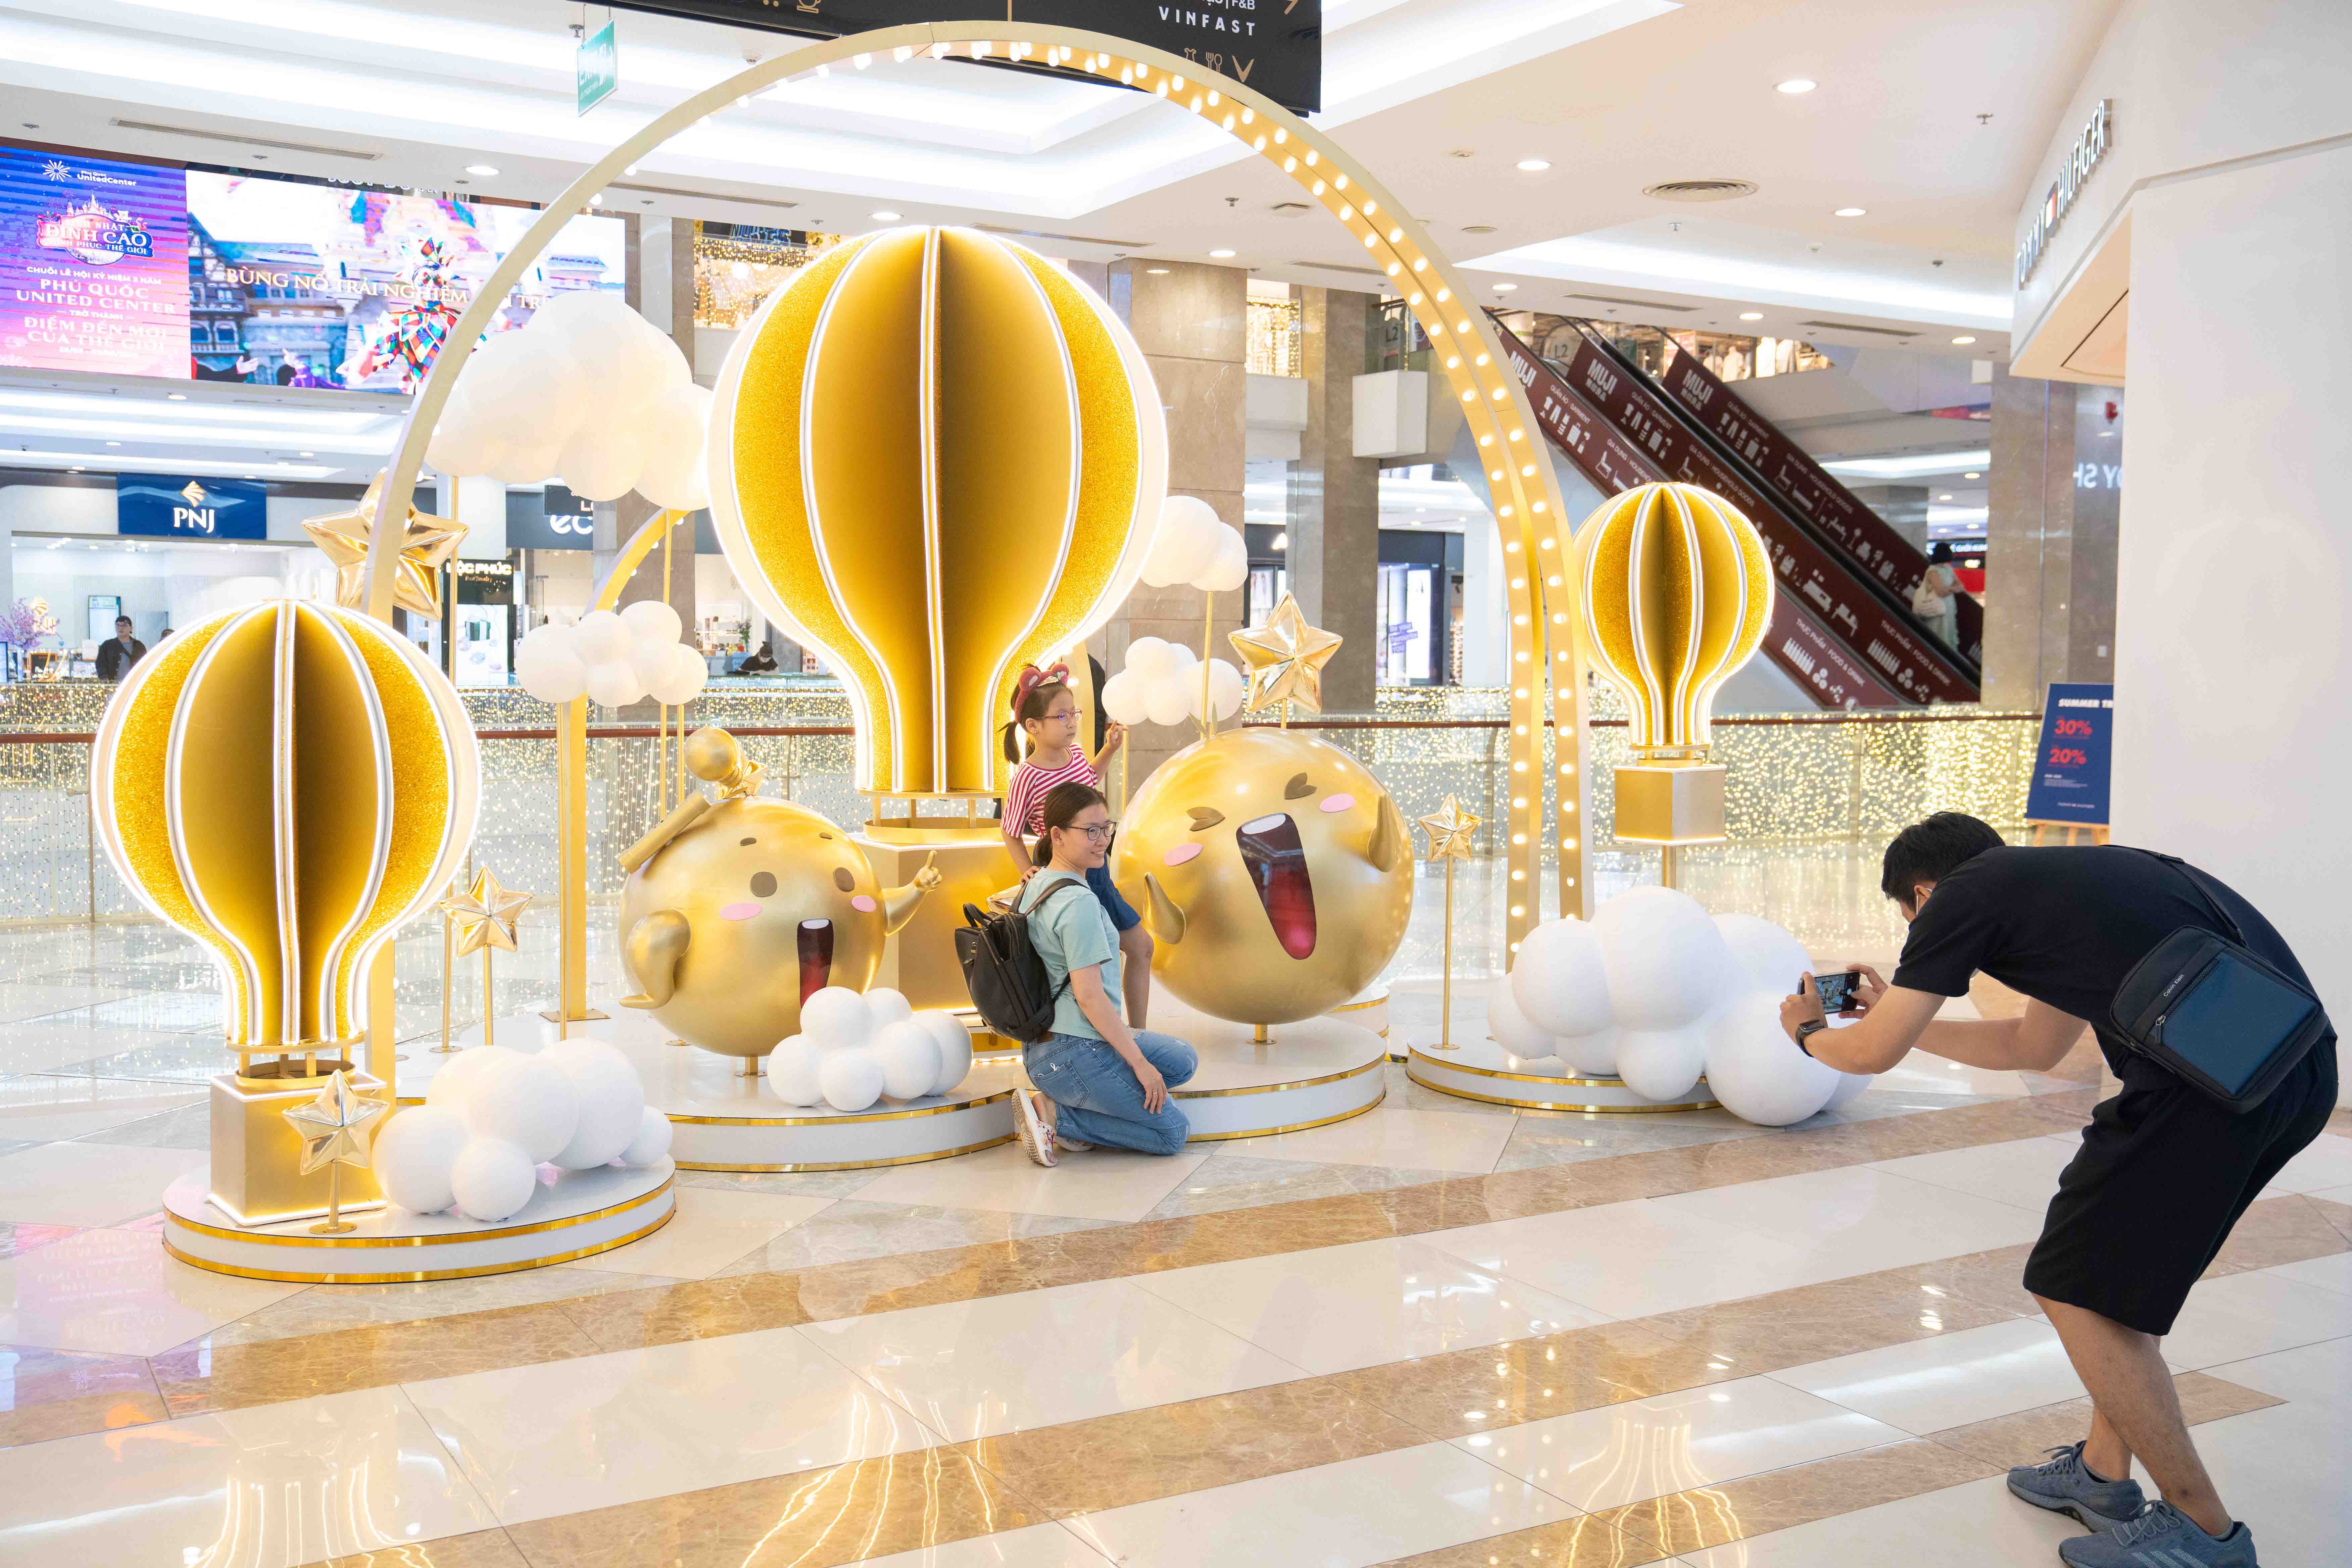 “Giang cư mận rần rần khoe góc chụp đẹp tại khinh khí cầu ánh sáng, thổi bùng cảm xúc hứng khởi tại Vincom Mega Mall Thảo Điền